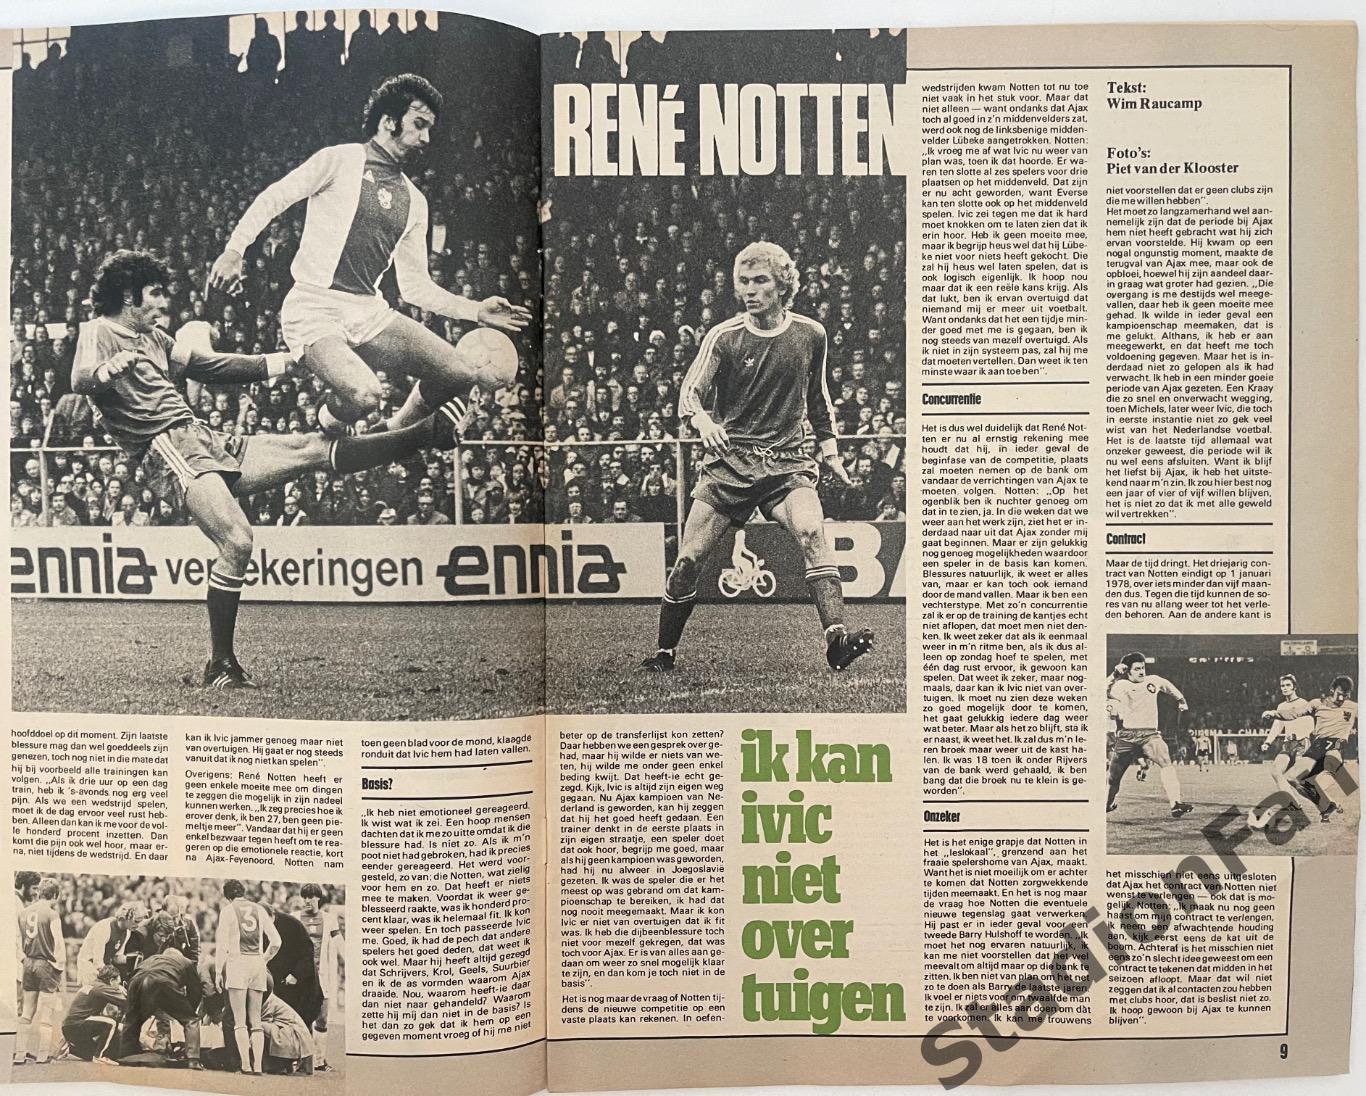 Журнал Voetbal nr.31 - 1977 год. 3